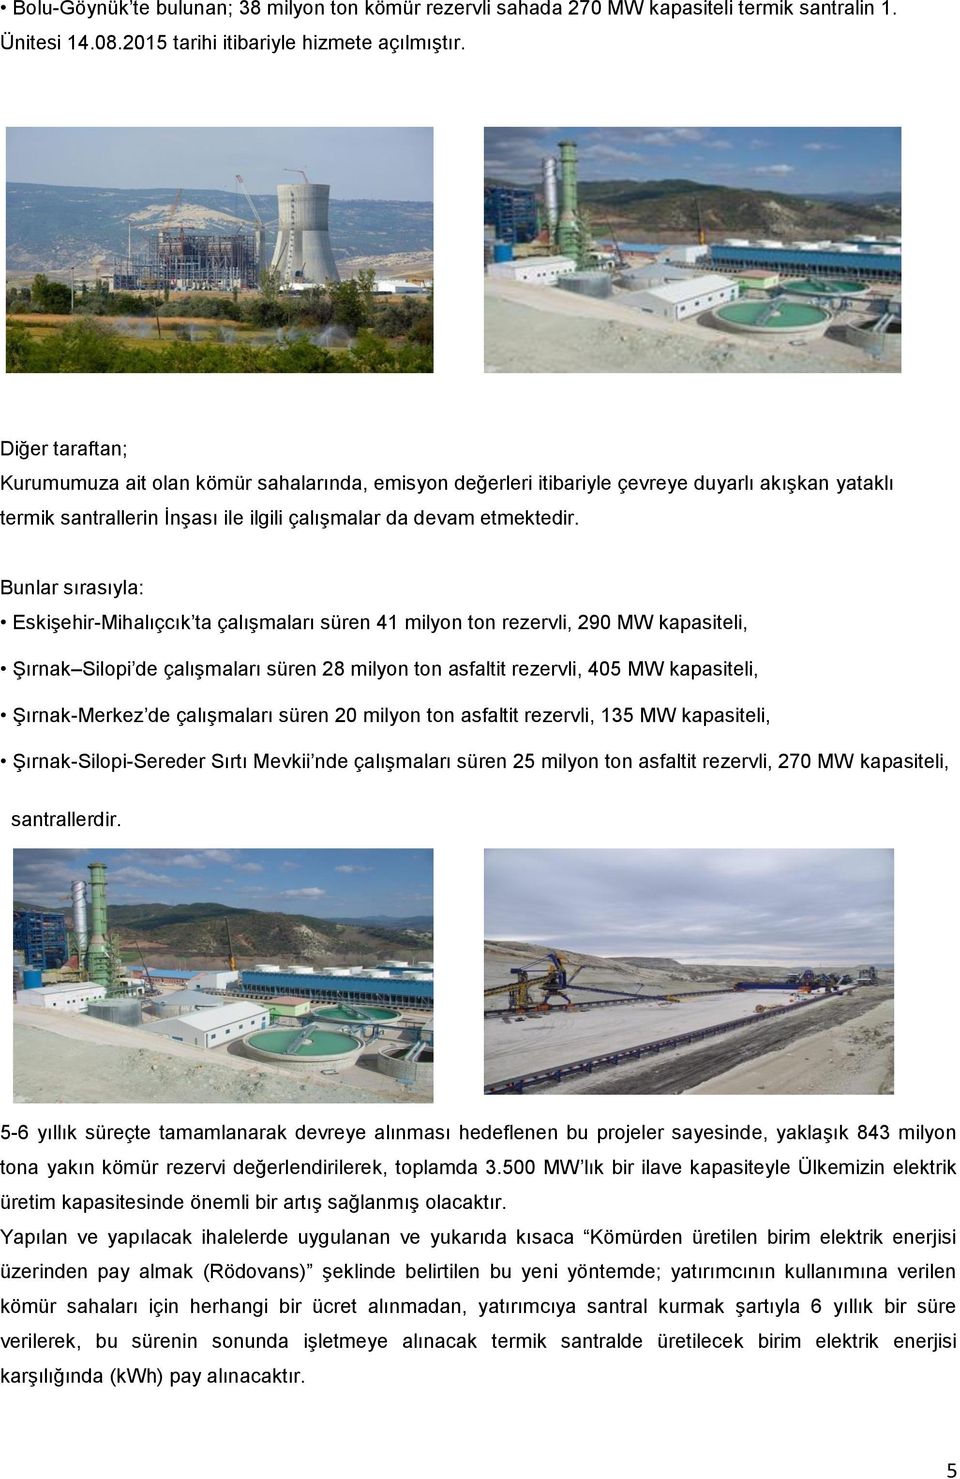 Bunlar sırasıyla: Eskişehir-Mihalıçcık ta çalışmaları süren 41 milyon ton rezervli, 290 MW kapasiteli, Şırnak Silopi de çalışmaları süren 28 milyon ton asfaltit rezervli, 405 MW kapasiteli,